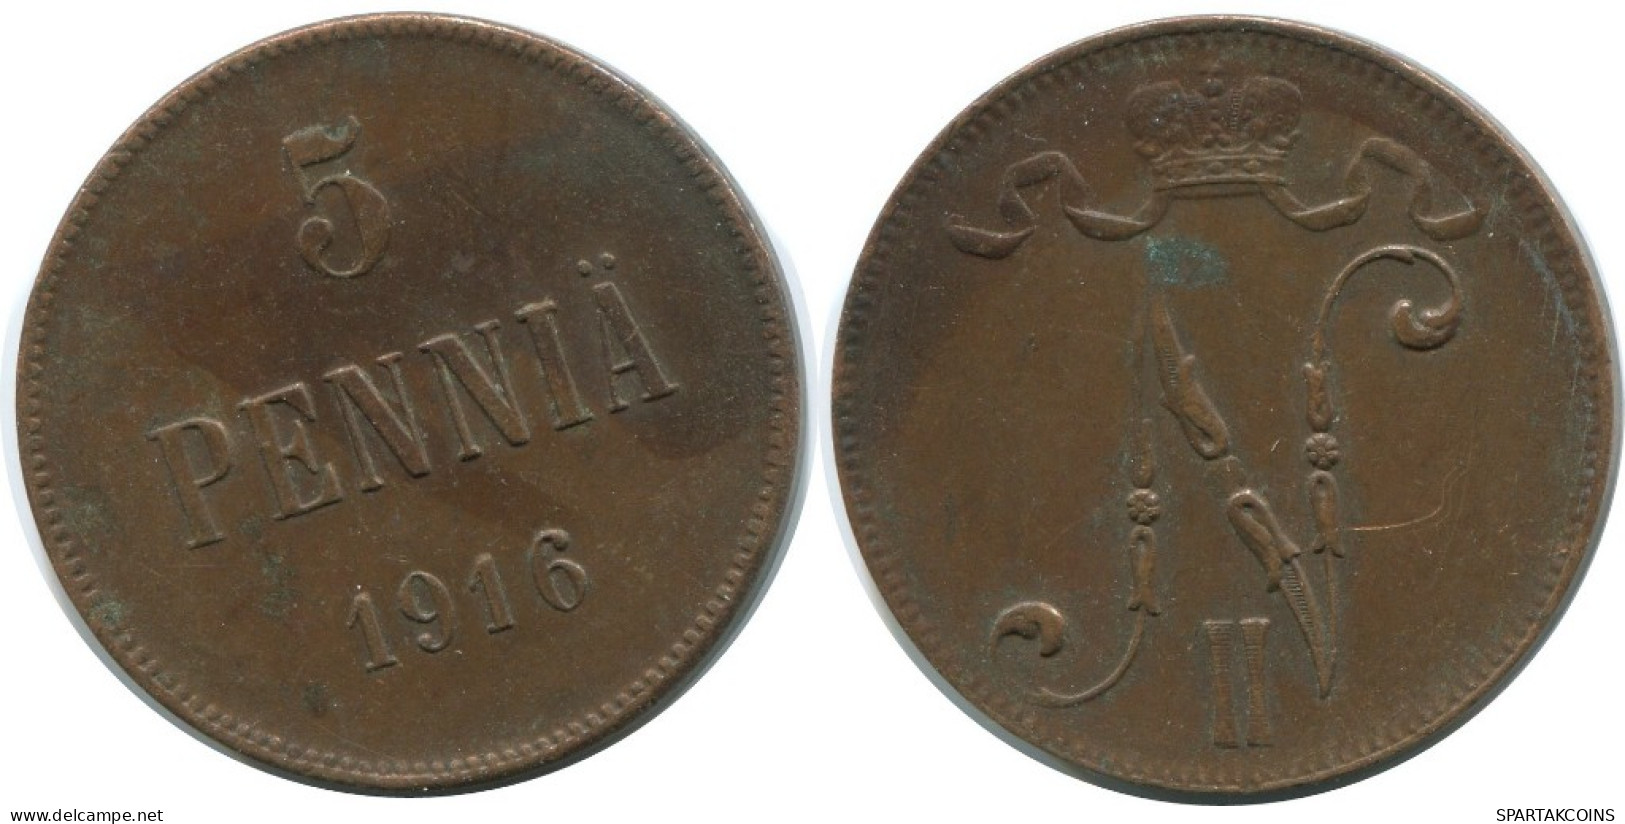 5 PENNIA 1916 FINLANDIA FINLAND Moneda RUSIA RUSSIA EMPIRE #AB267.5.E.A - Finnland